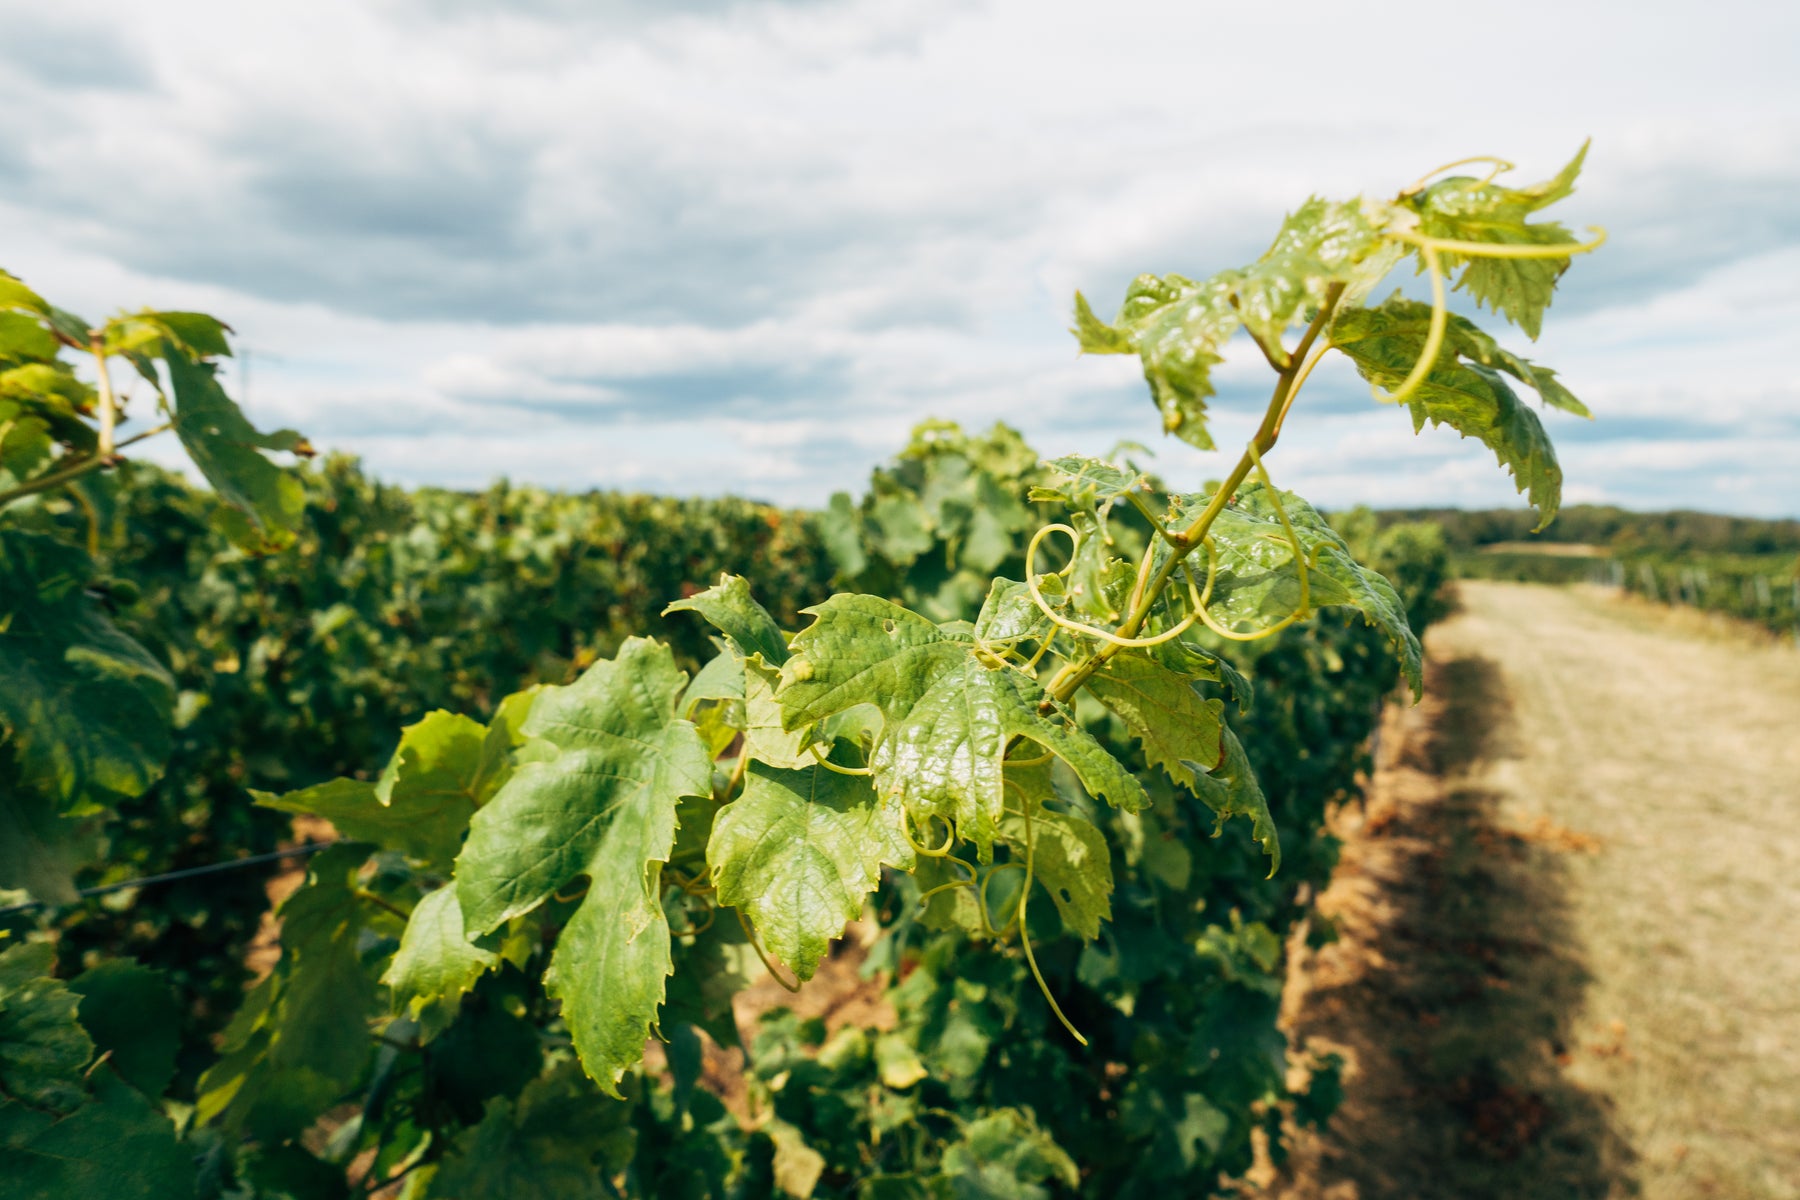 Nahaufnahme von Weinreben in einer Weinregion